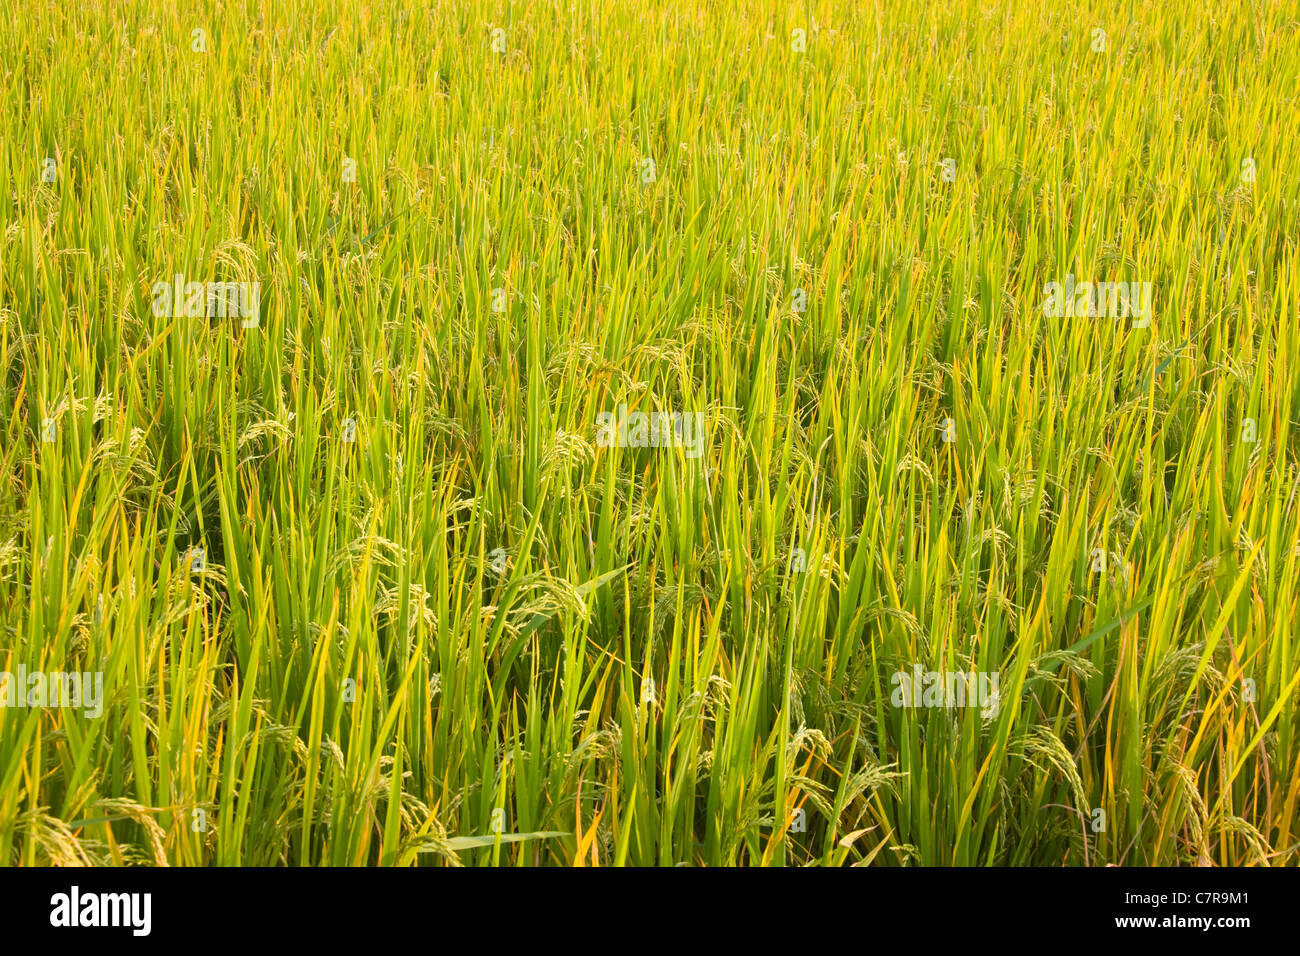 Los cultivos de arroz, de la provincia de Guangxi, China Foto de stock